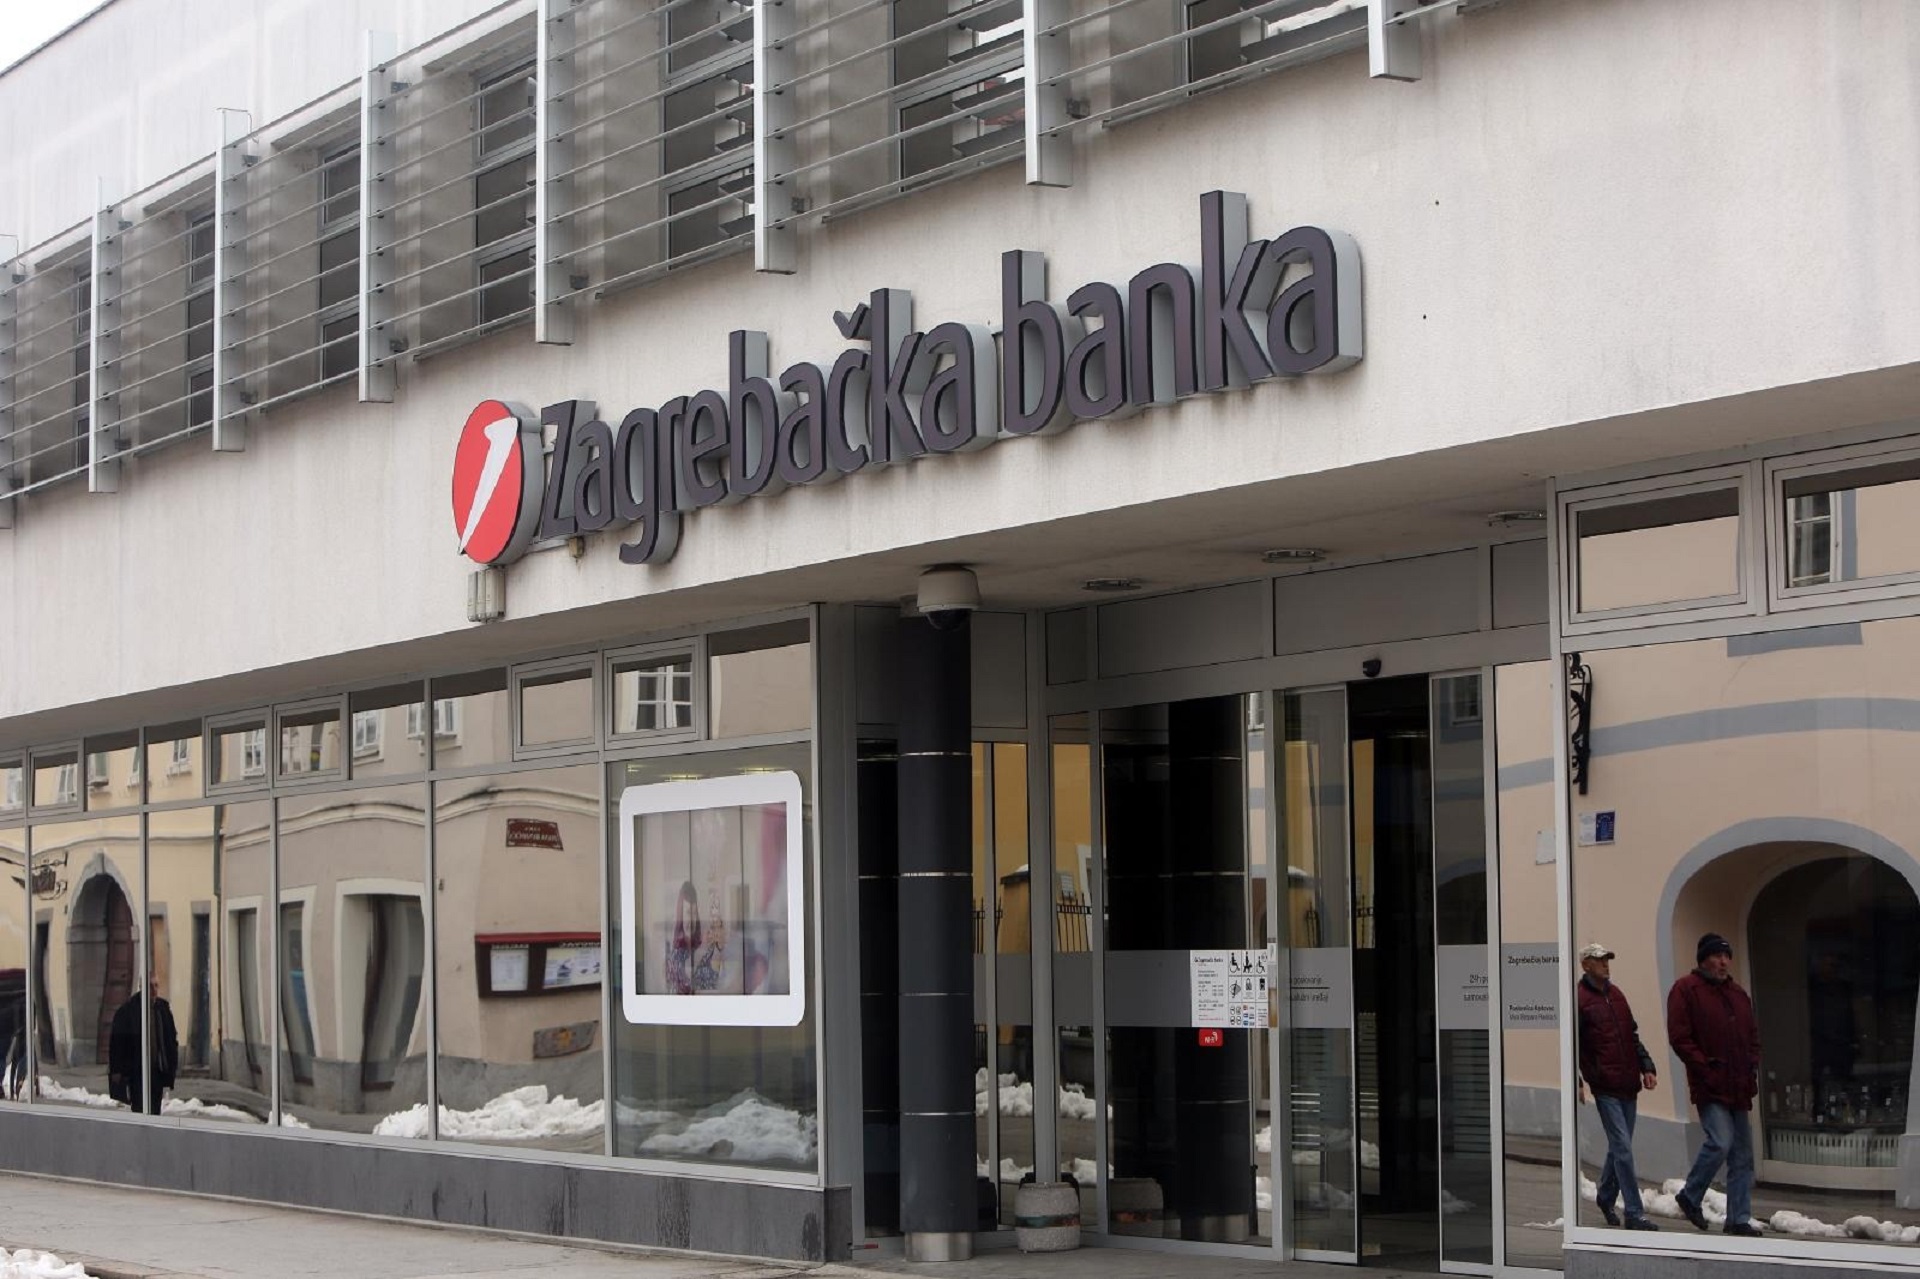 09.02.2018., Karlovac - Poslovnica Zagrebacke banke u Radicevoj ulici. 
Photo: Kristina Stedul Fabac/PIXSELL